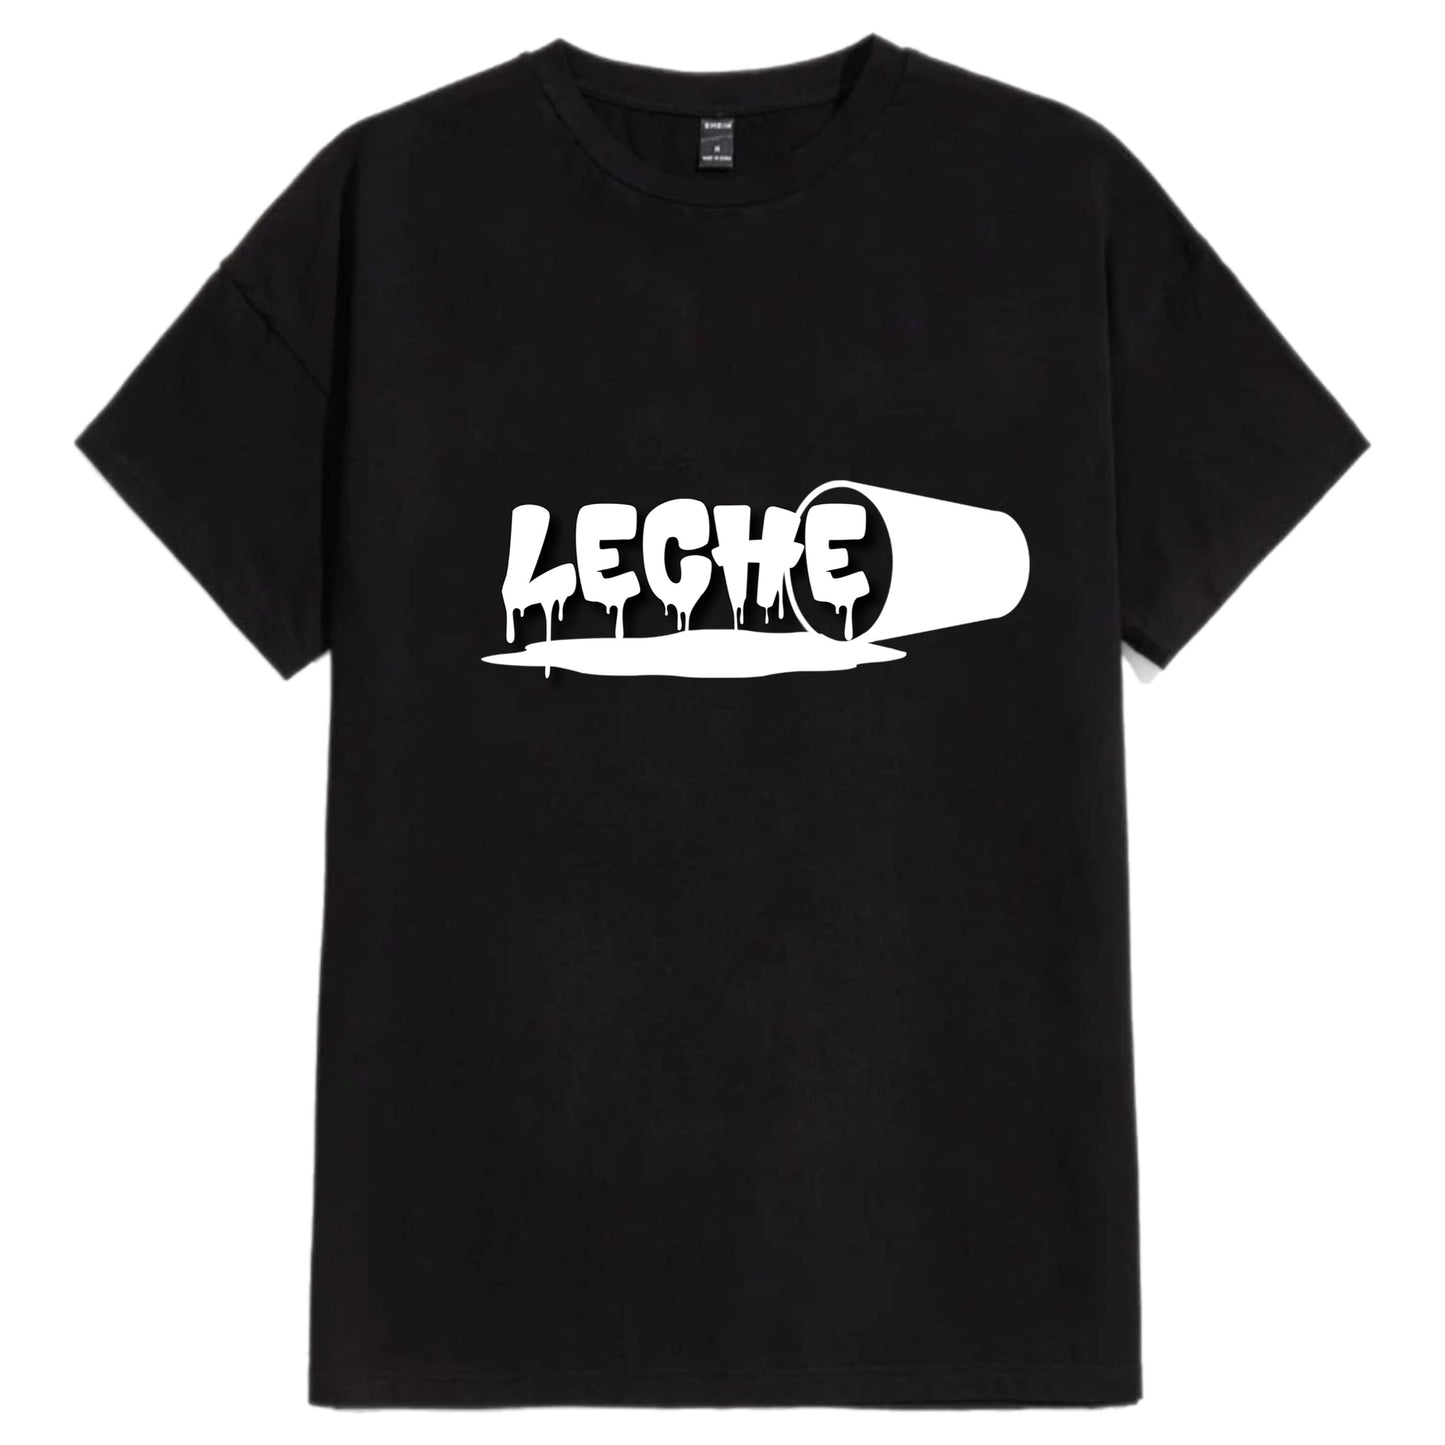 Men's/Women's Classic Fit "Leche Cup" T-Shirt